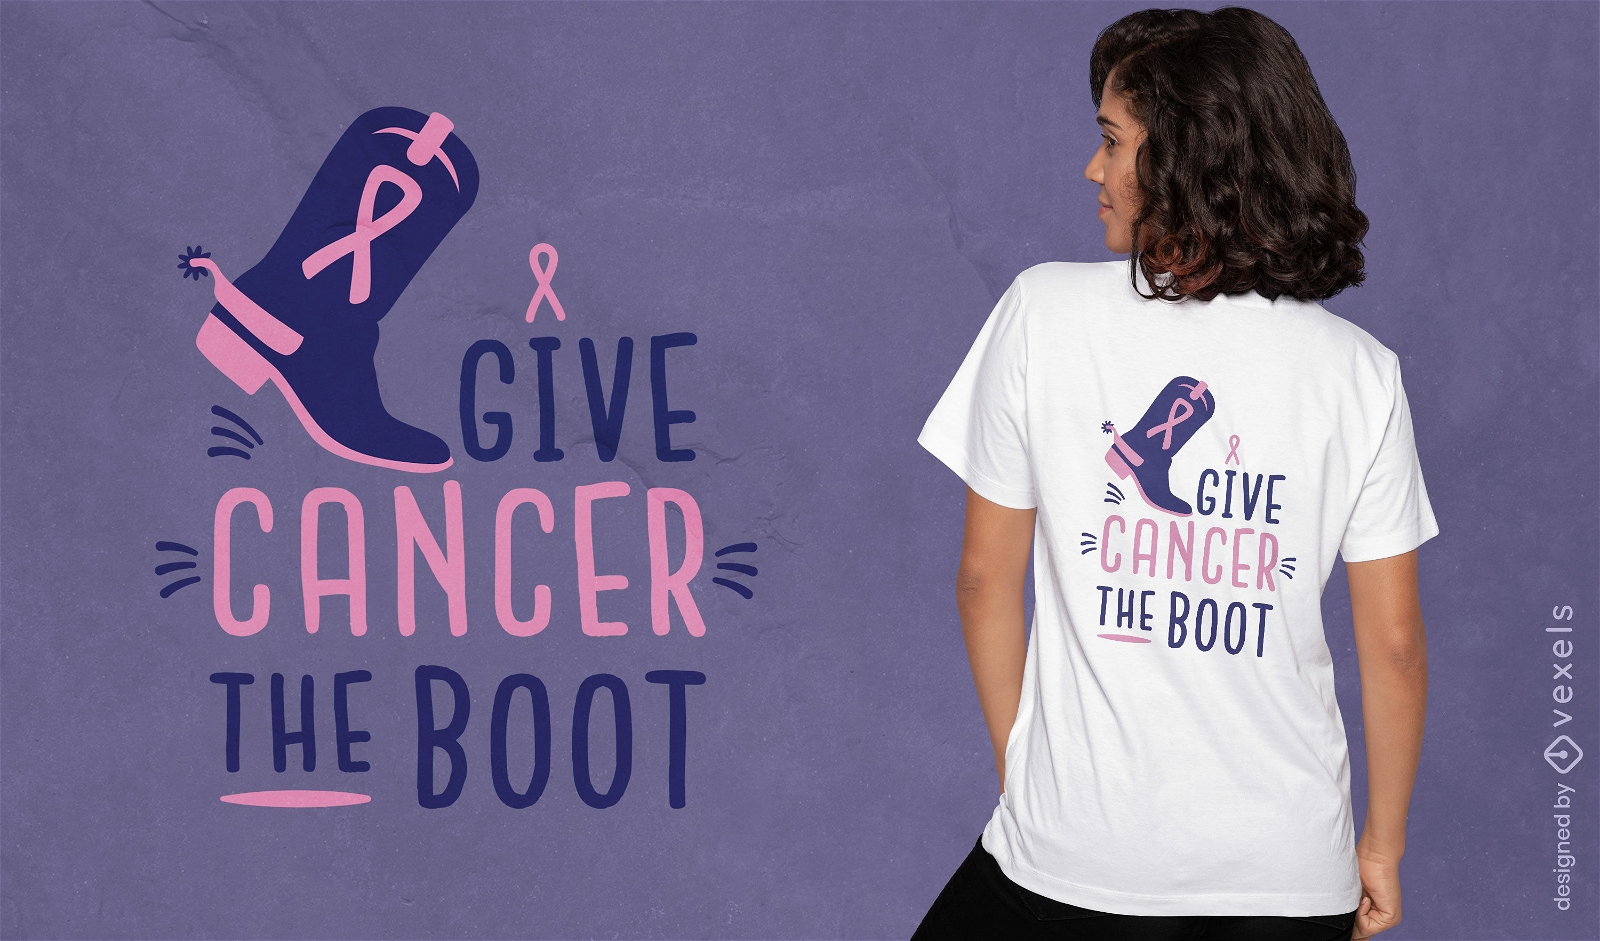 Dale al cáncer el diseño de camiseta de bota.